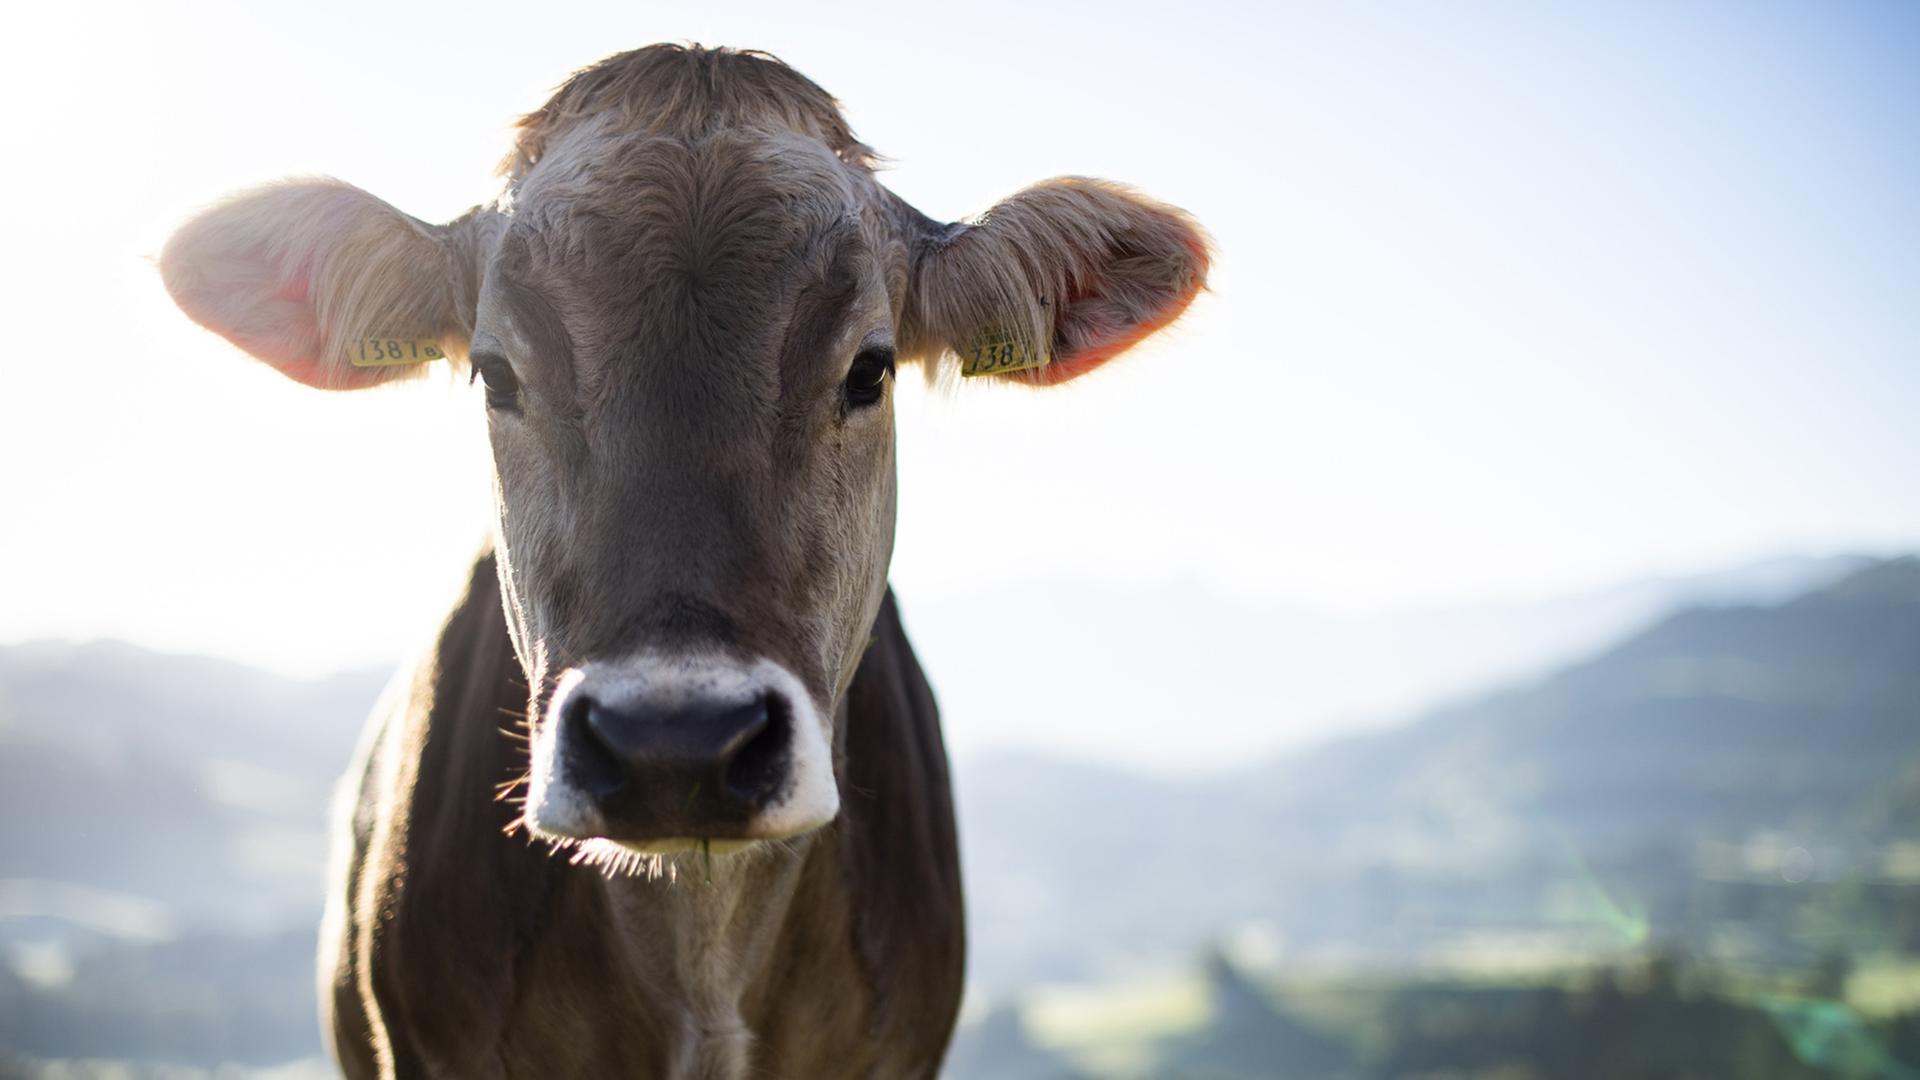 Eine enthornte Kuh: "Das ist eigentlich eine Amputation eines Körperglieds", sagt Tierschutz-Professor Hanno Würbel.